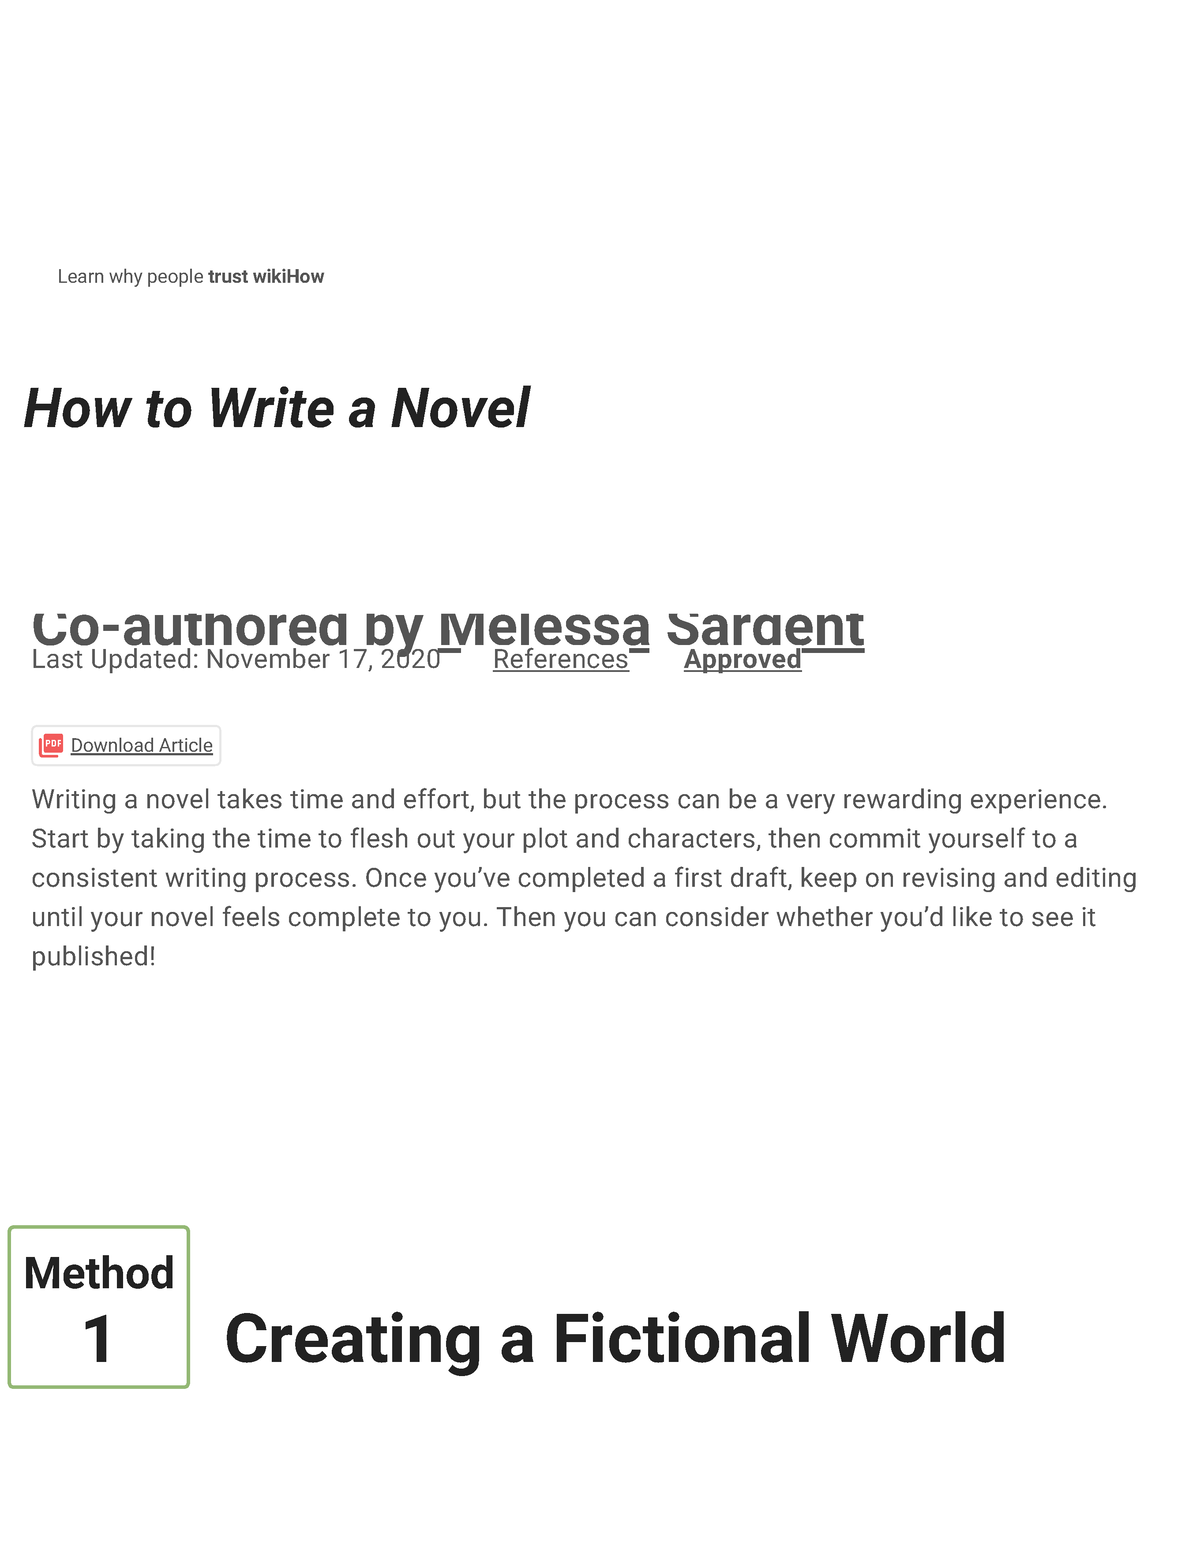 4-ways-to-write-a-novel-wiki-how-how-to-write-a-novel-co-authored